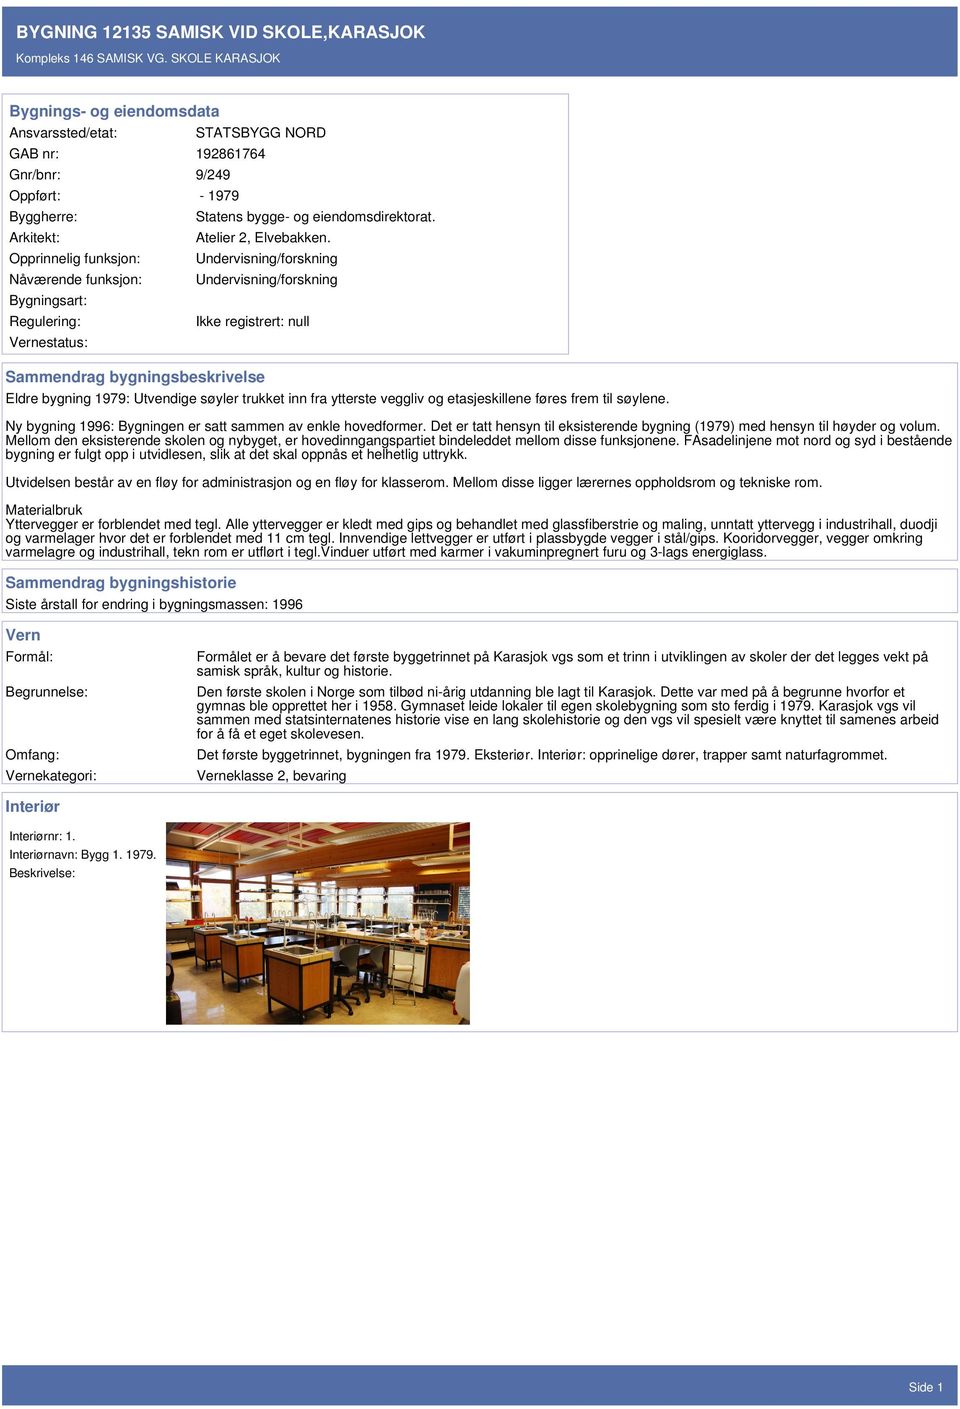 Regulering: Vernestatus: Statens bygge- og eiendomsdirektorat. Atelier 2, Elvebakken.